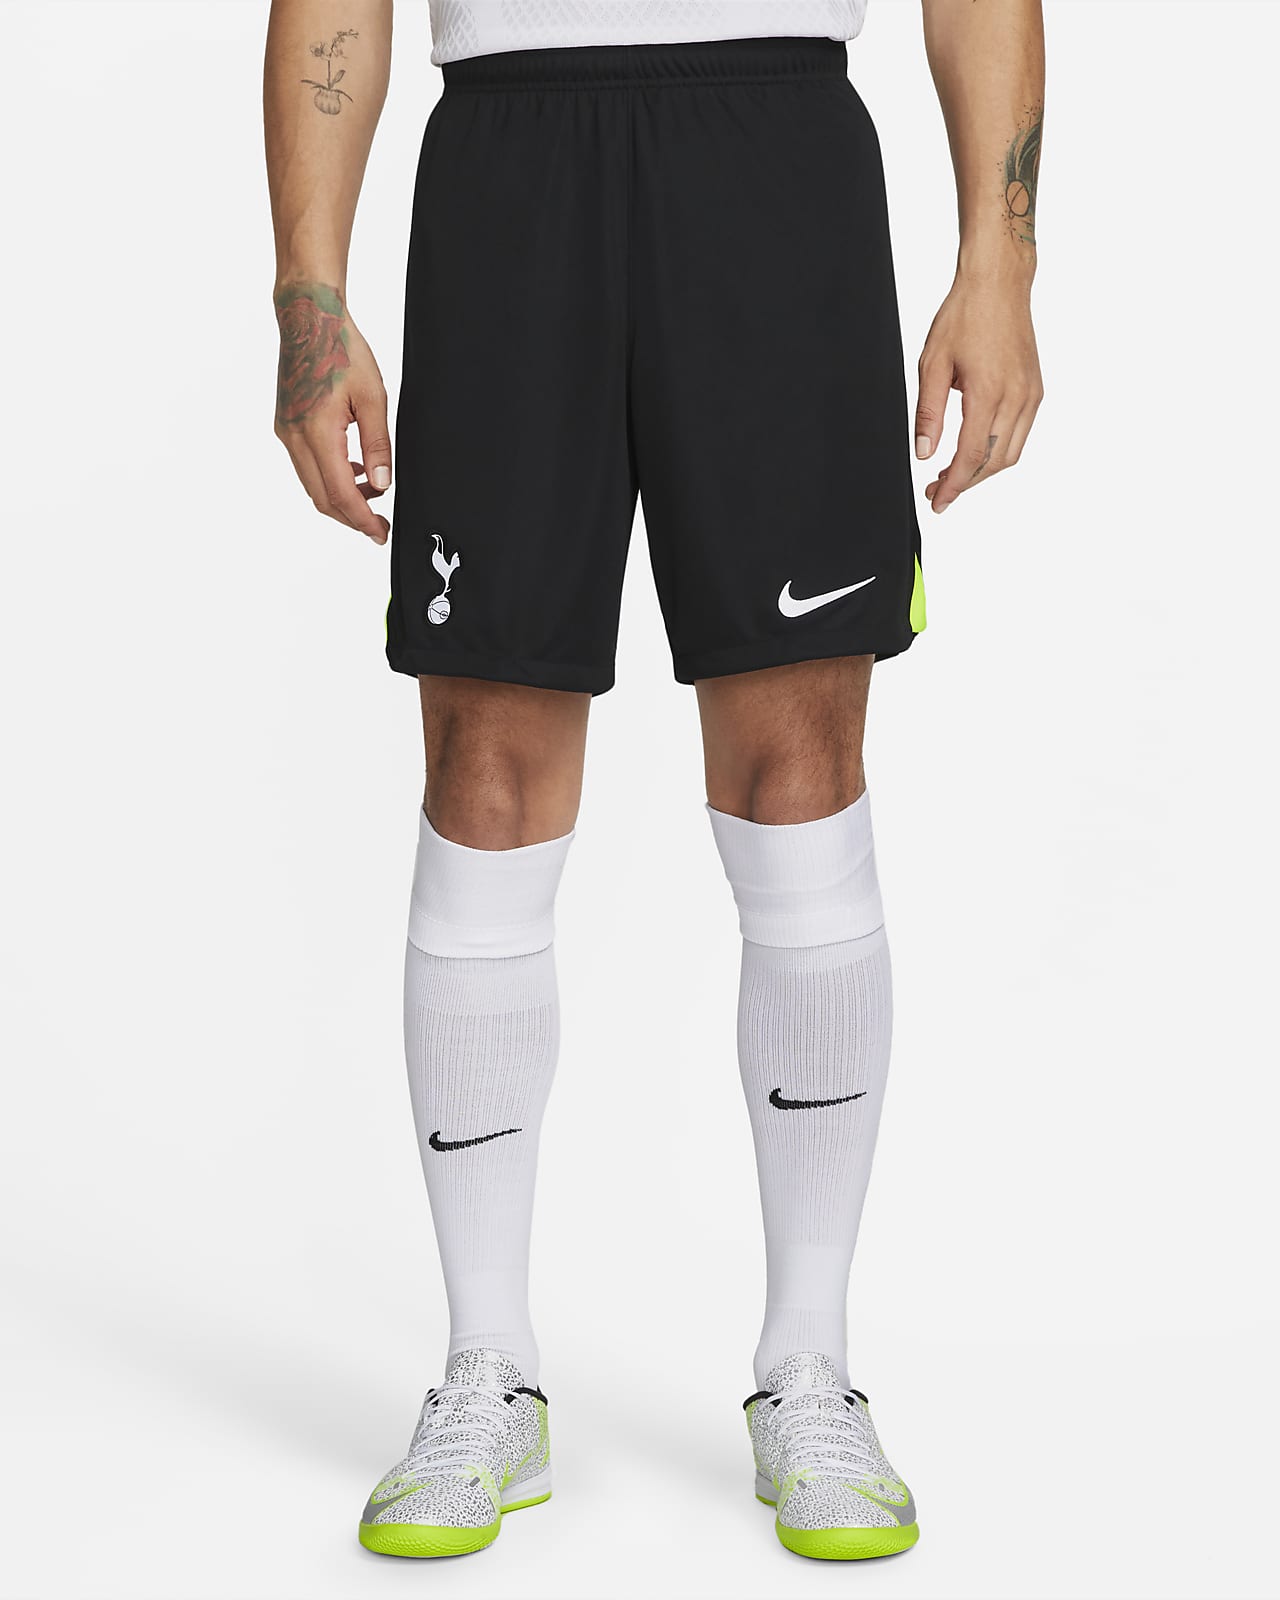 Tottenham Hotspur 2022/23 Stadium Home/Away Men's Nike Dri-FIT Football Shorts